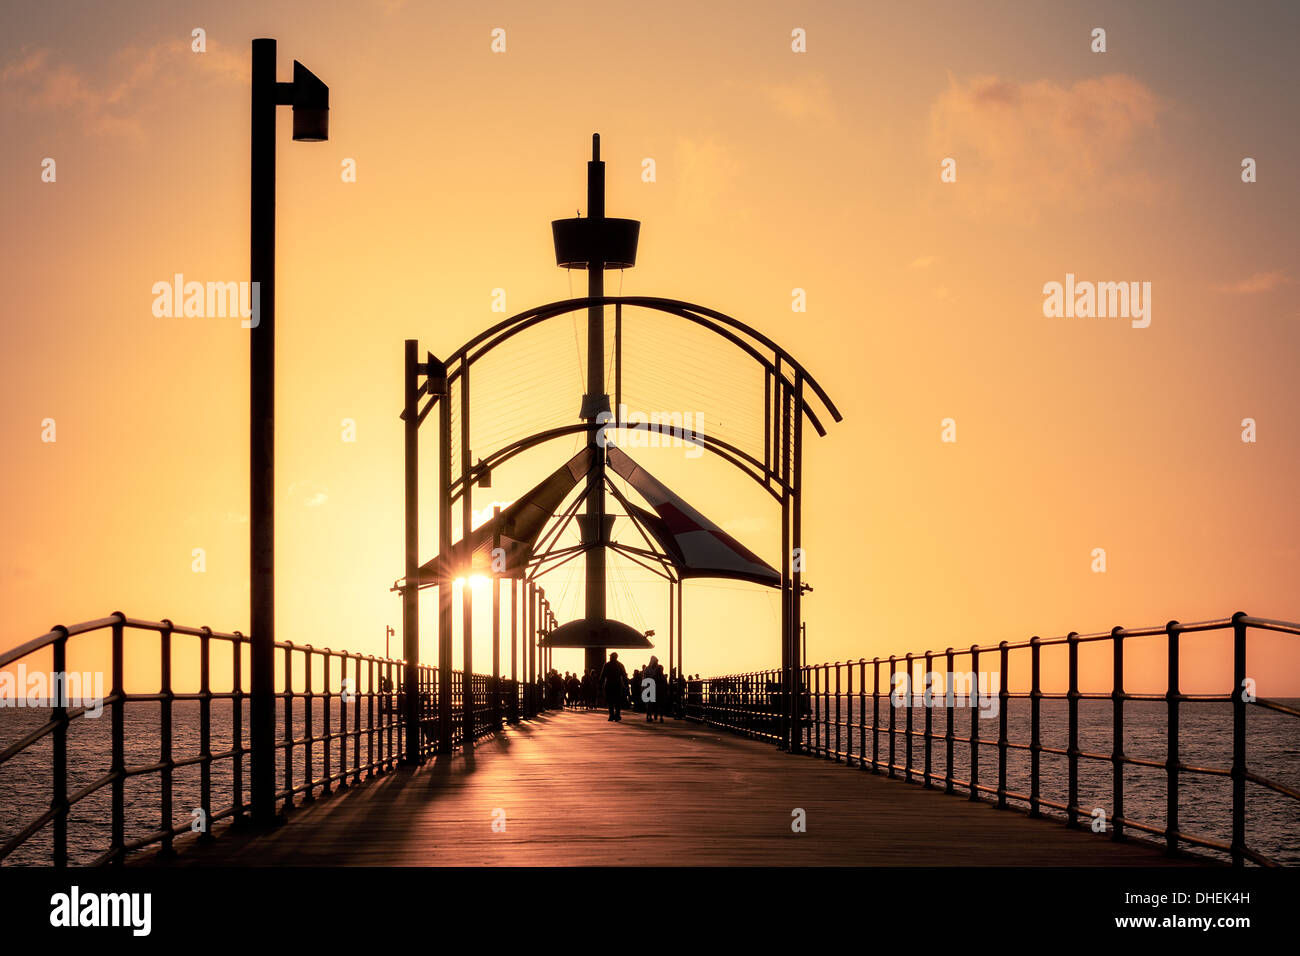 Un coucher de soleil à la belle ville de Brighton Pier en Australie, une station avec de l'eau claire comme du cristal et d'une plage de sable Banque D'Images